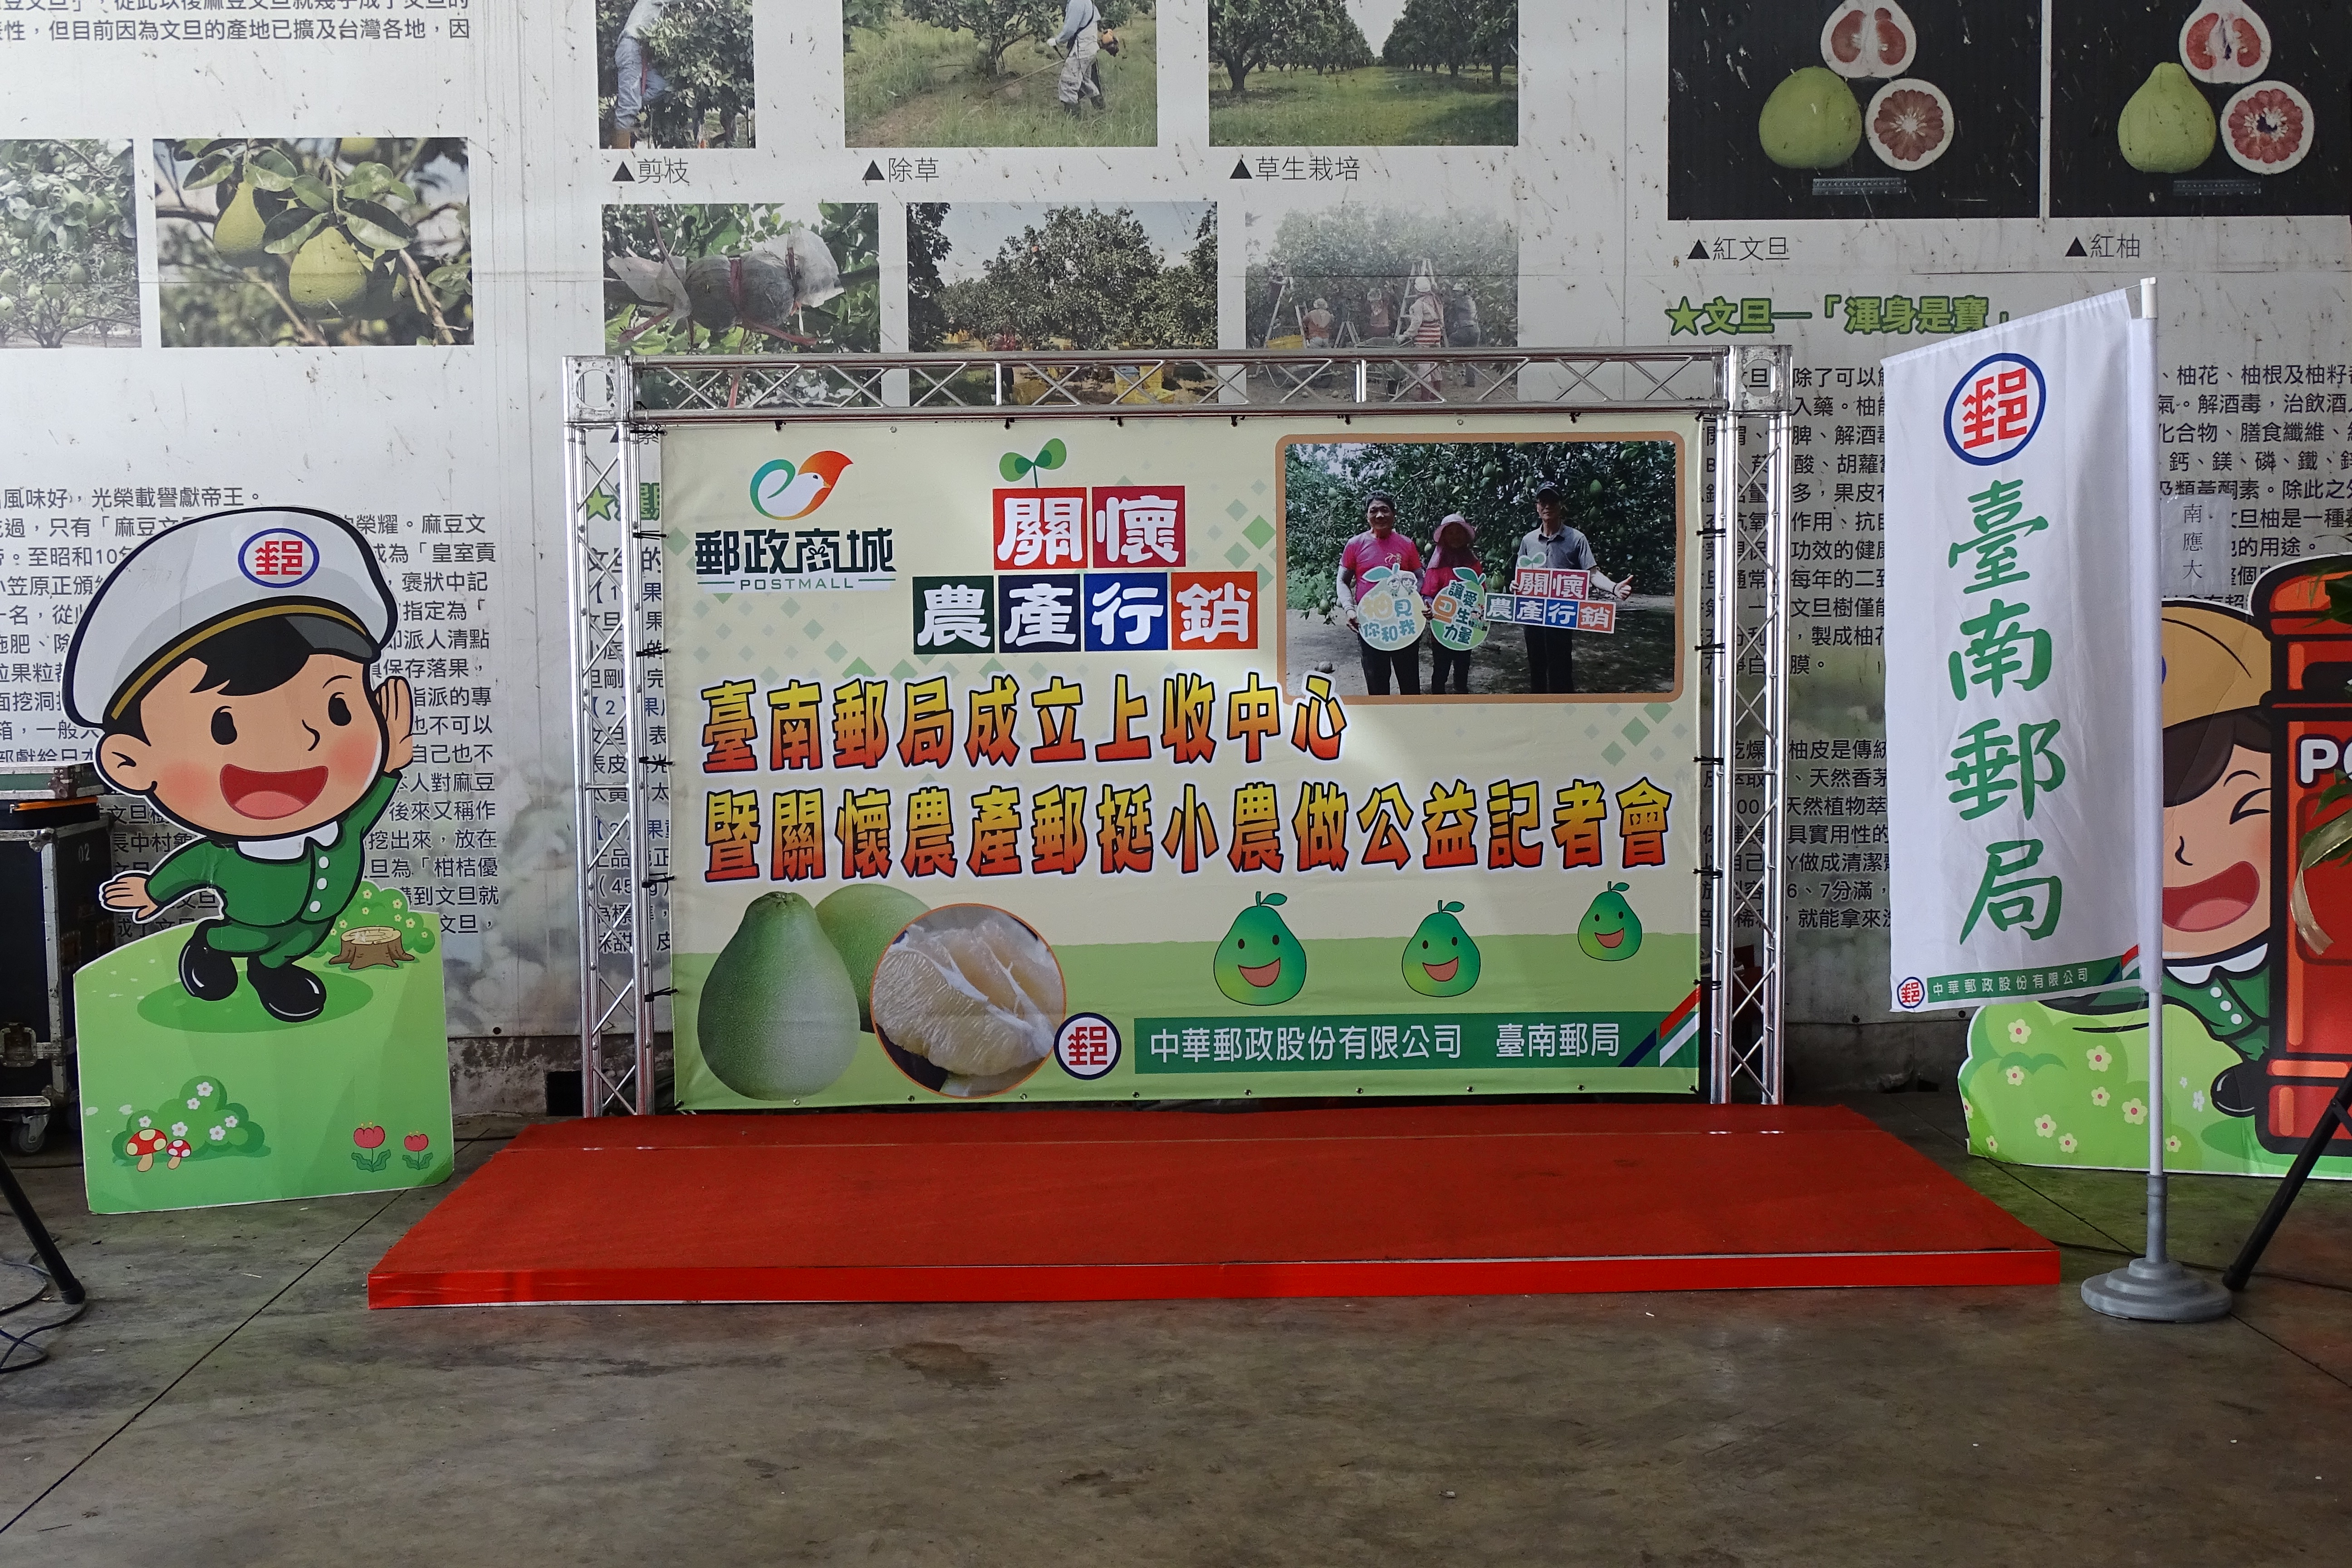 臺南郵局成立上收中心&關懷農產郵挺小農做公益記者會